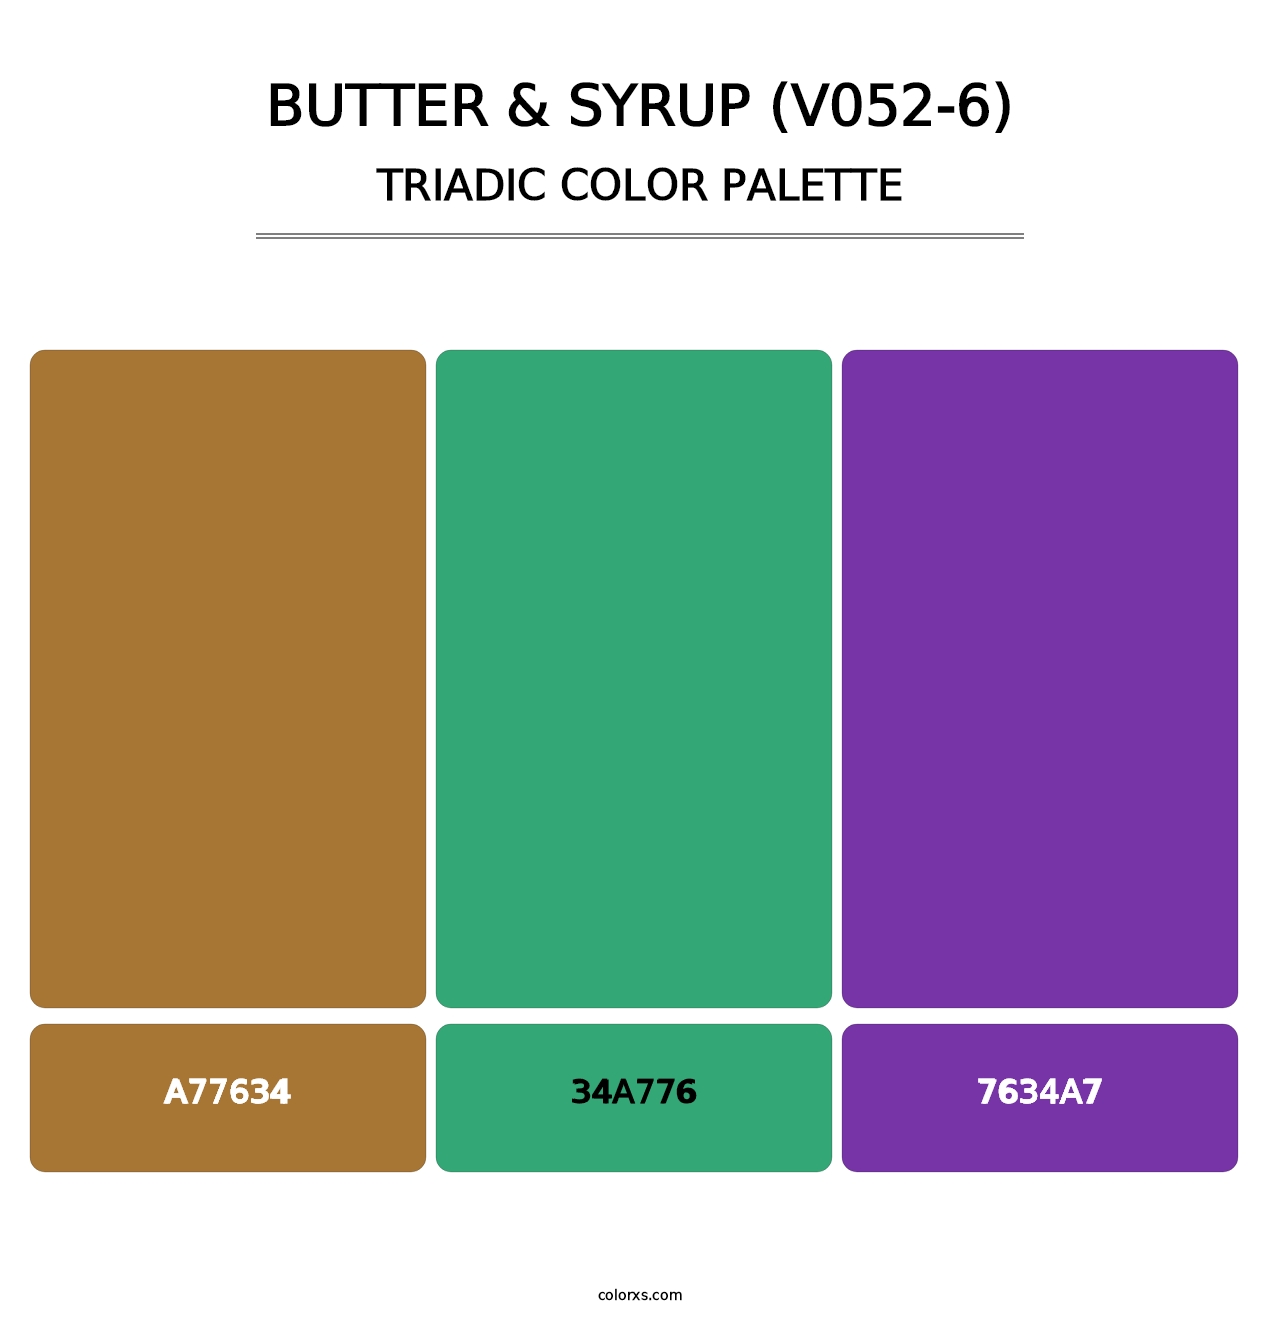 Butter & Syrup (V052-6) - Triadic Color Palette